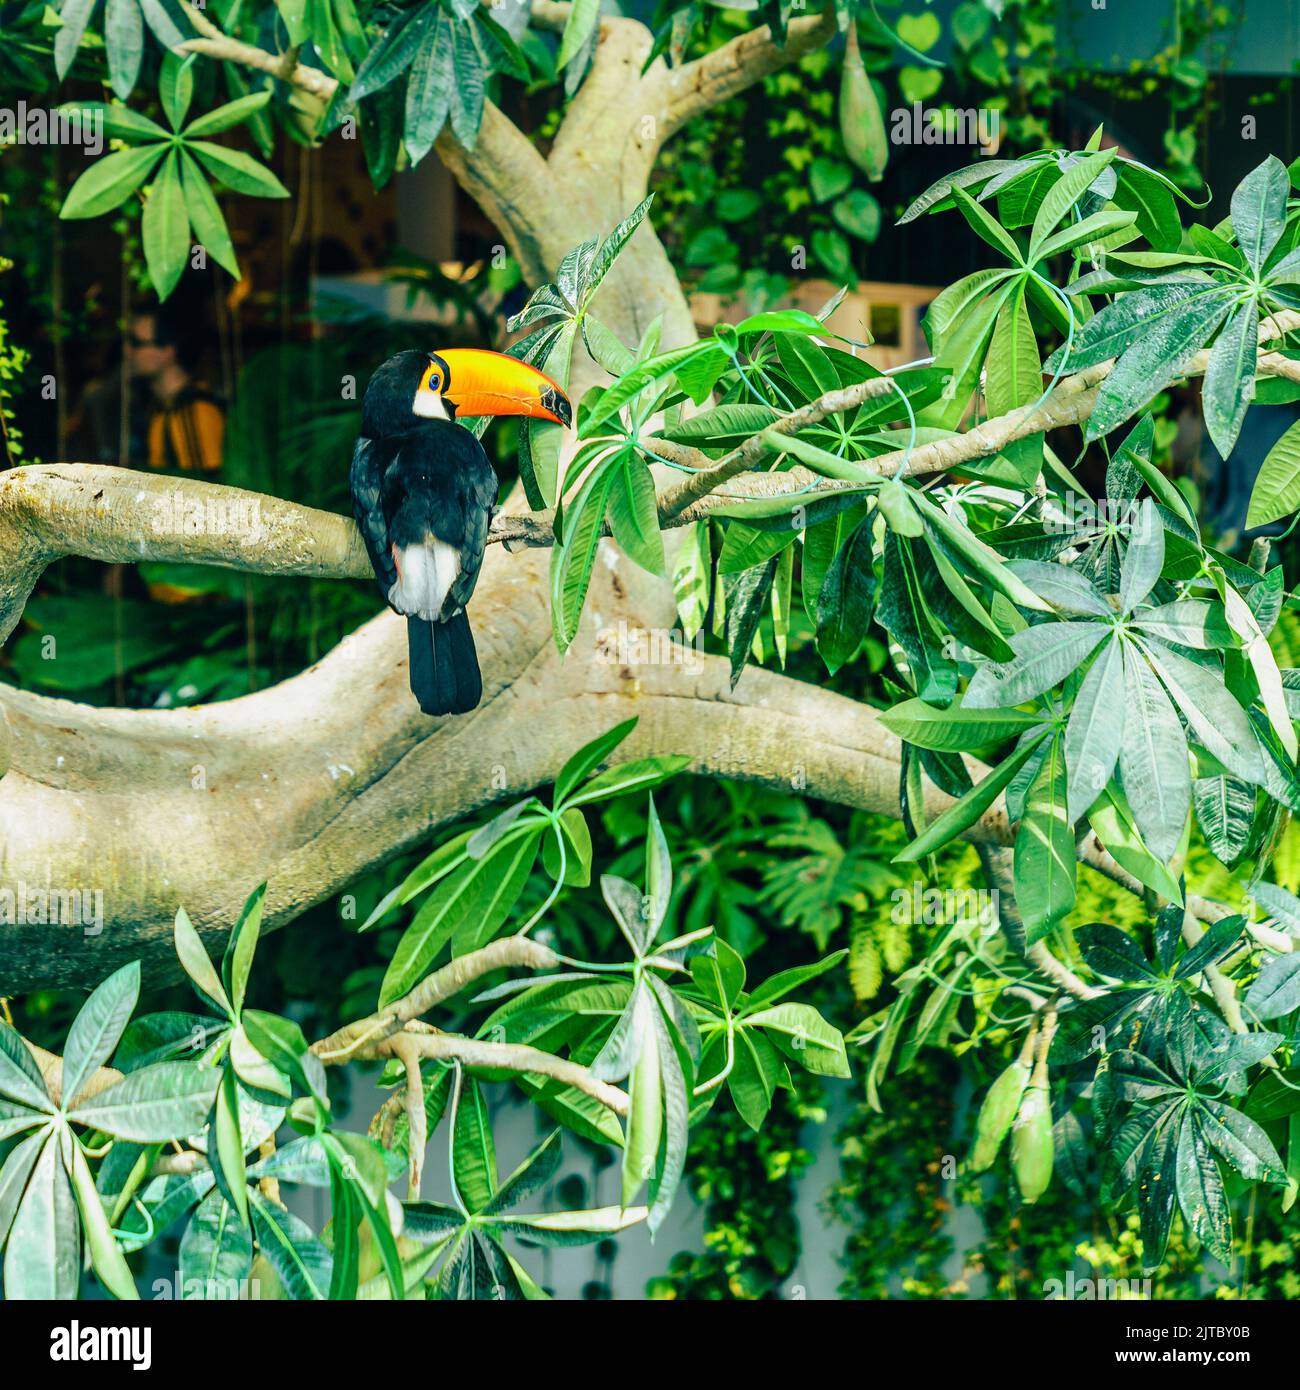 Retrato de toco tucán o tucán gigante en un santuario de aves Foto de stock